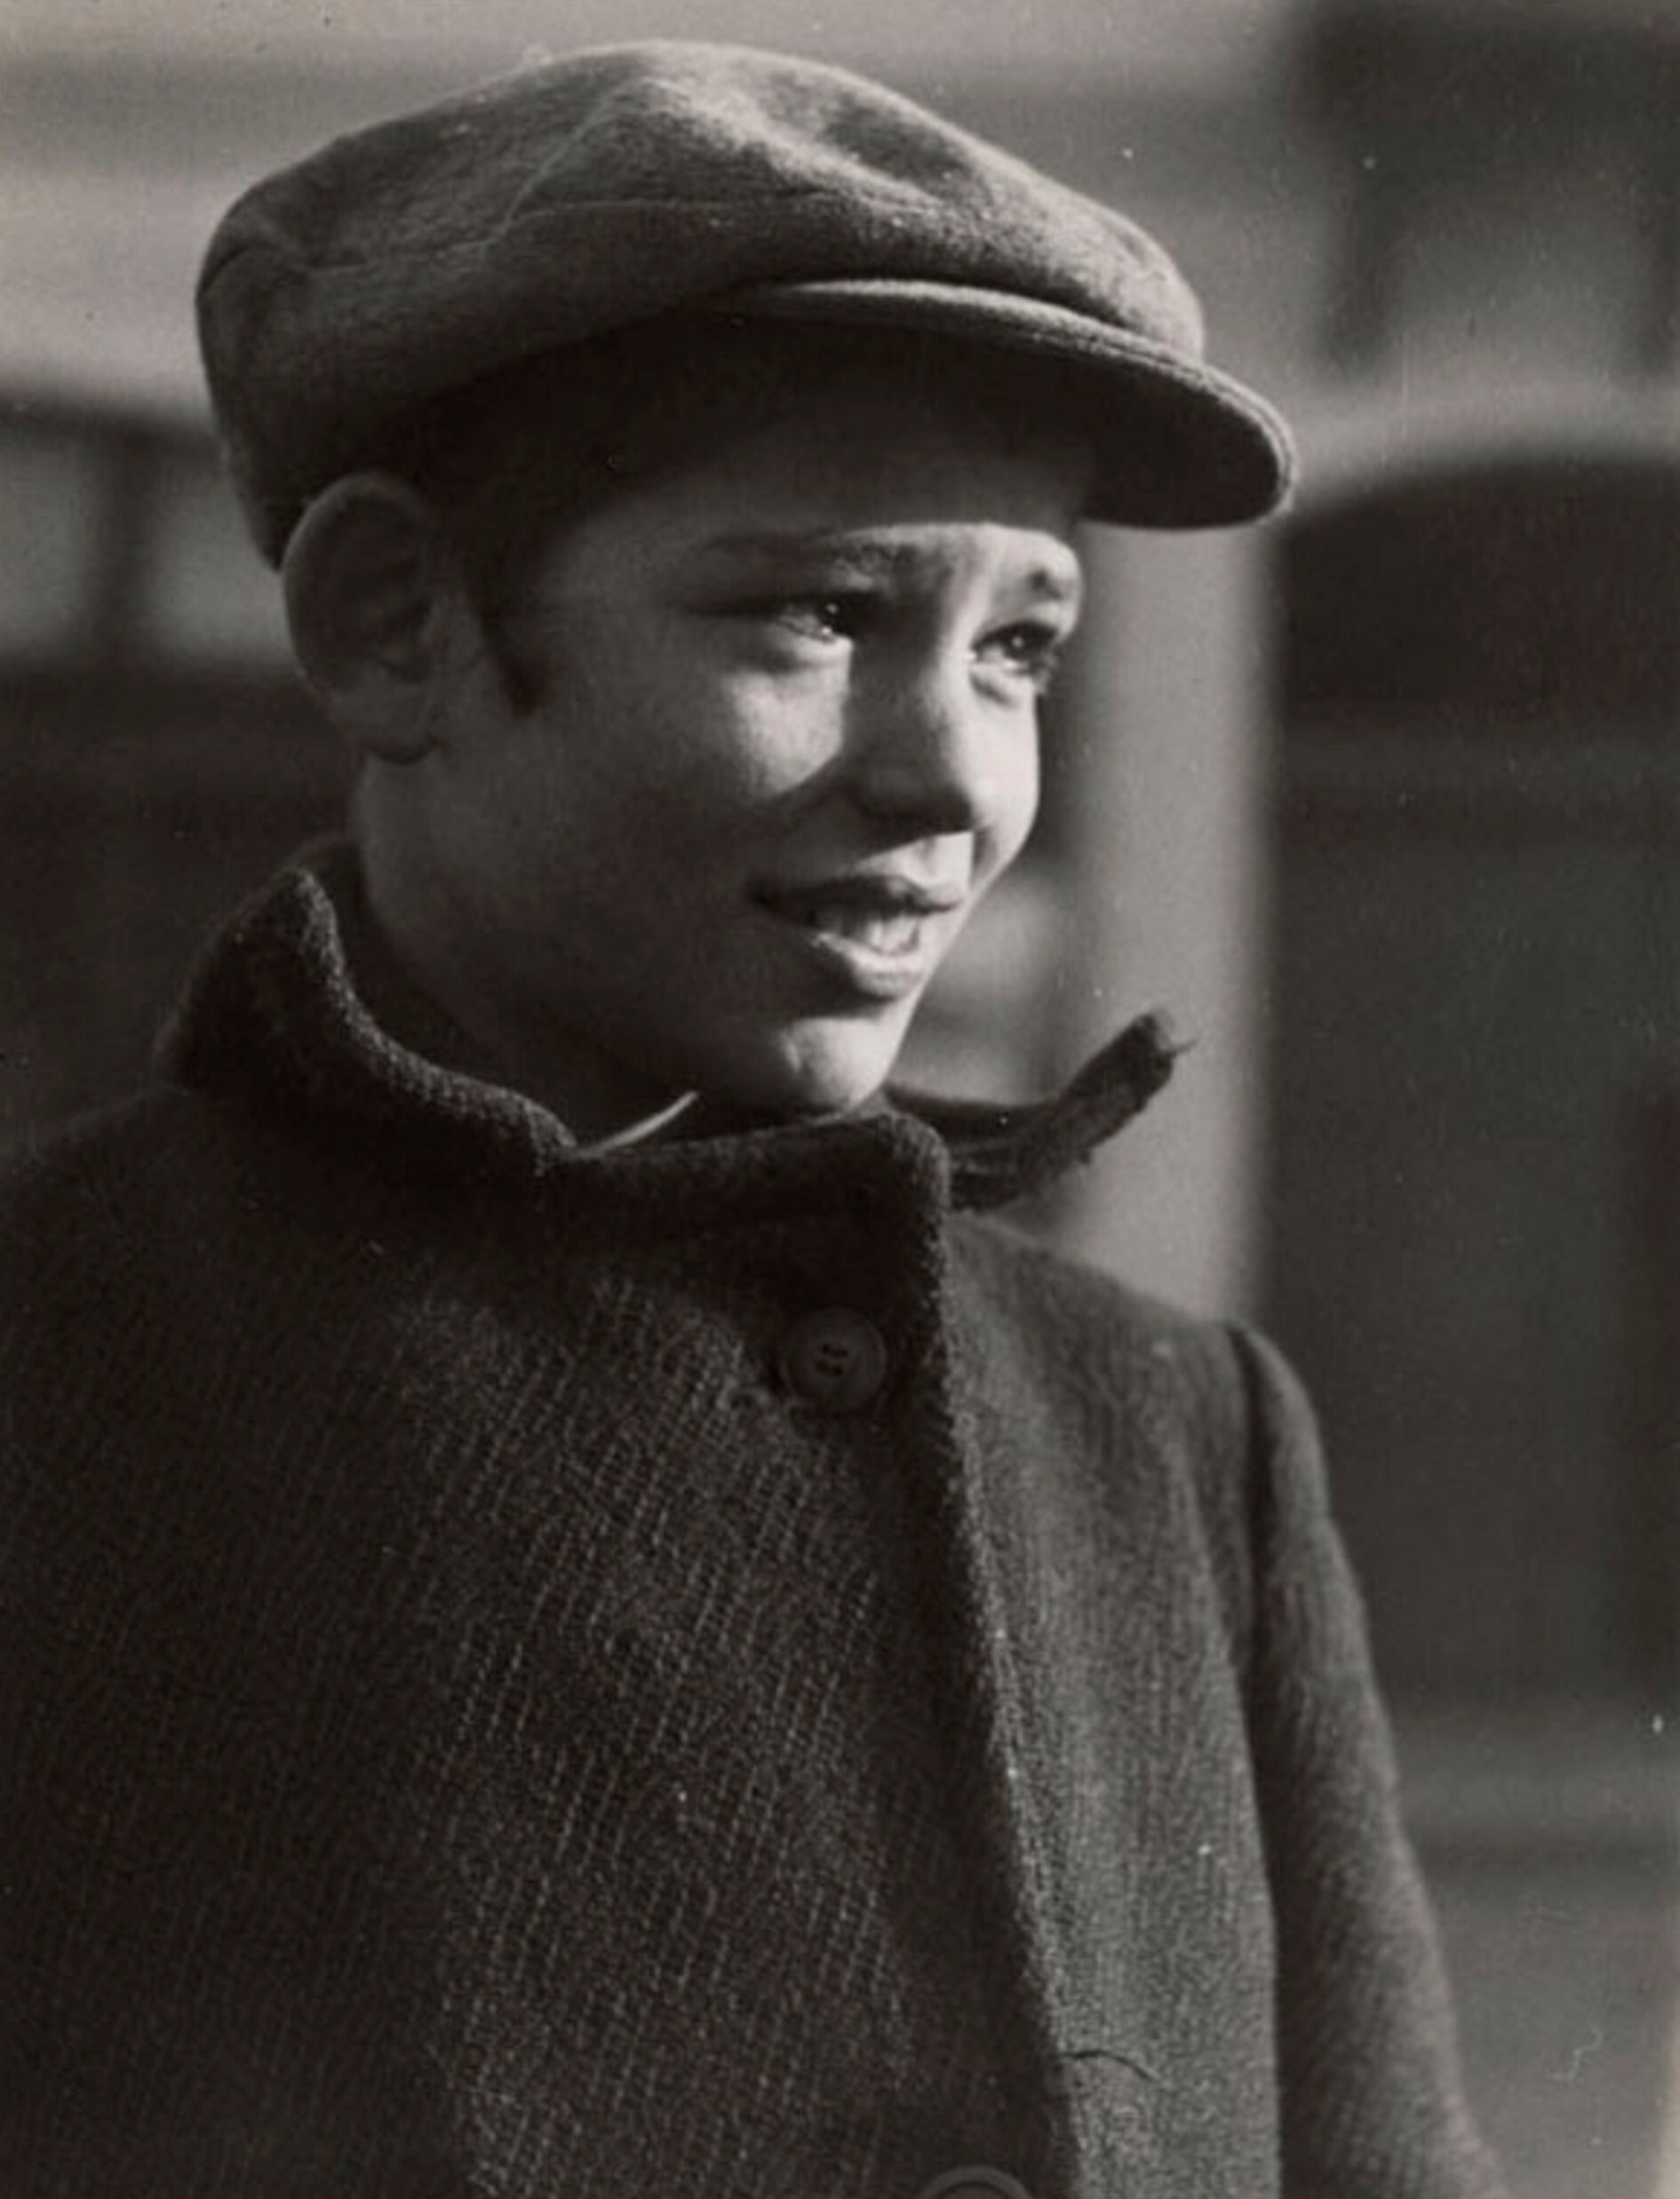 Еврейский мальчик, Мукачево, ок. 1935-38 гг. Фотограф Роман Вишняк